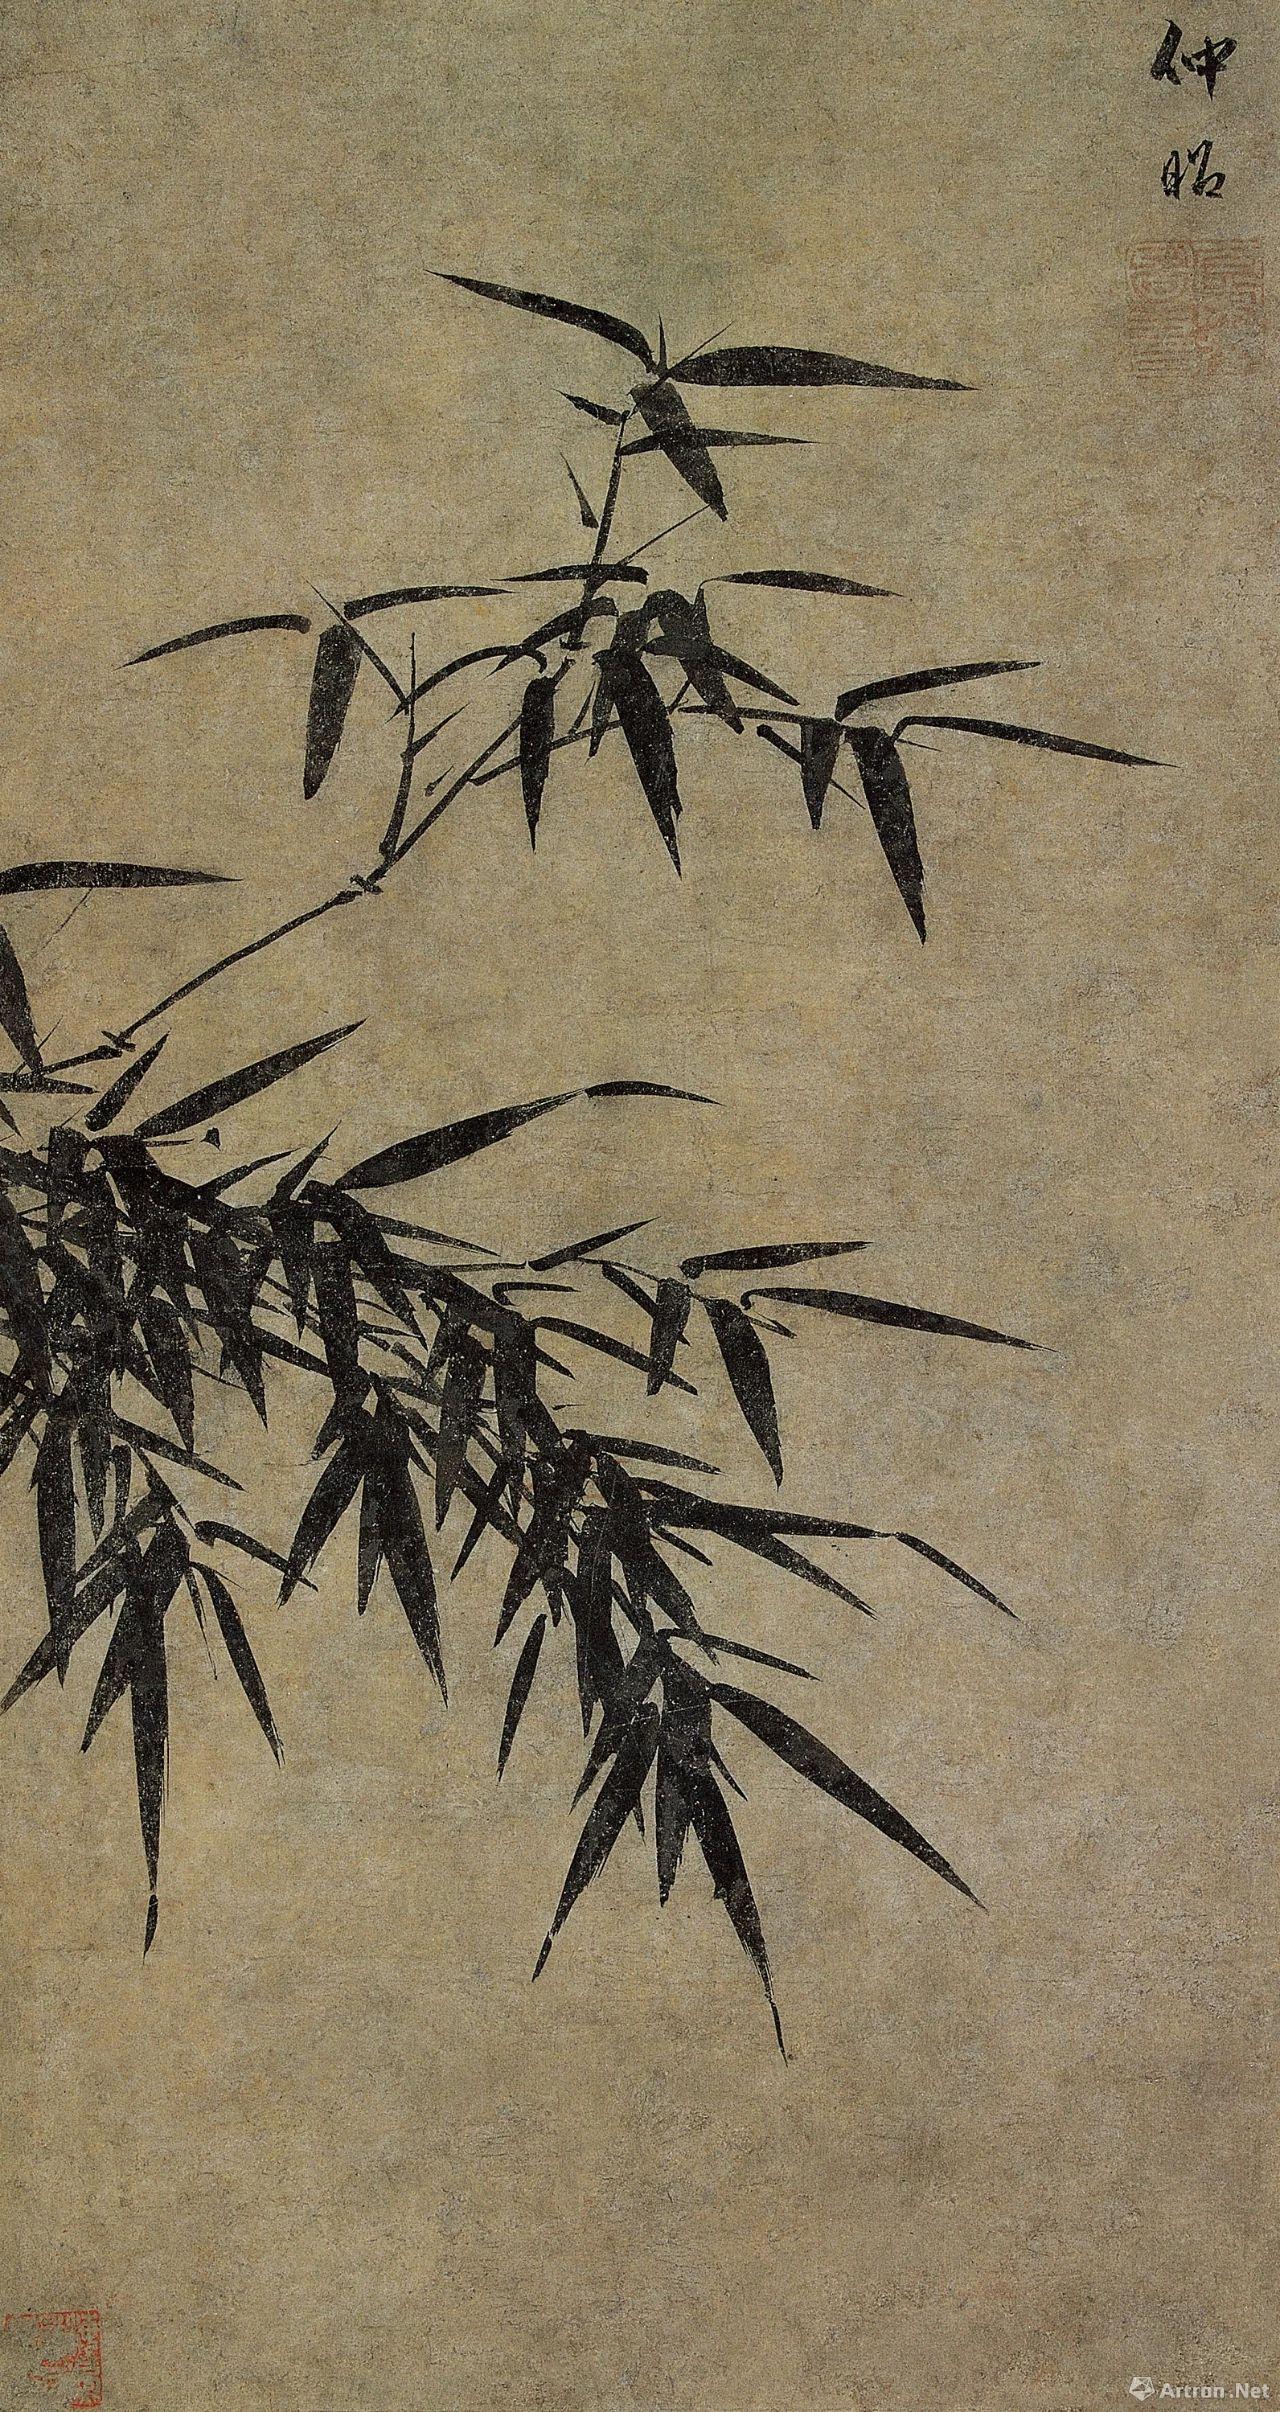 画竹子当代最好的画家,谁画竹子最有名,中画竹人_大山谷图库